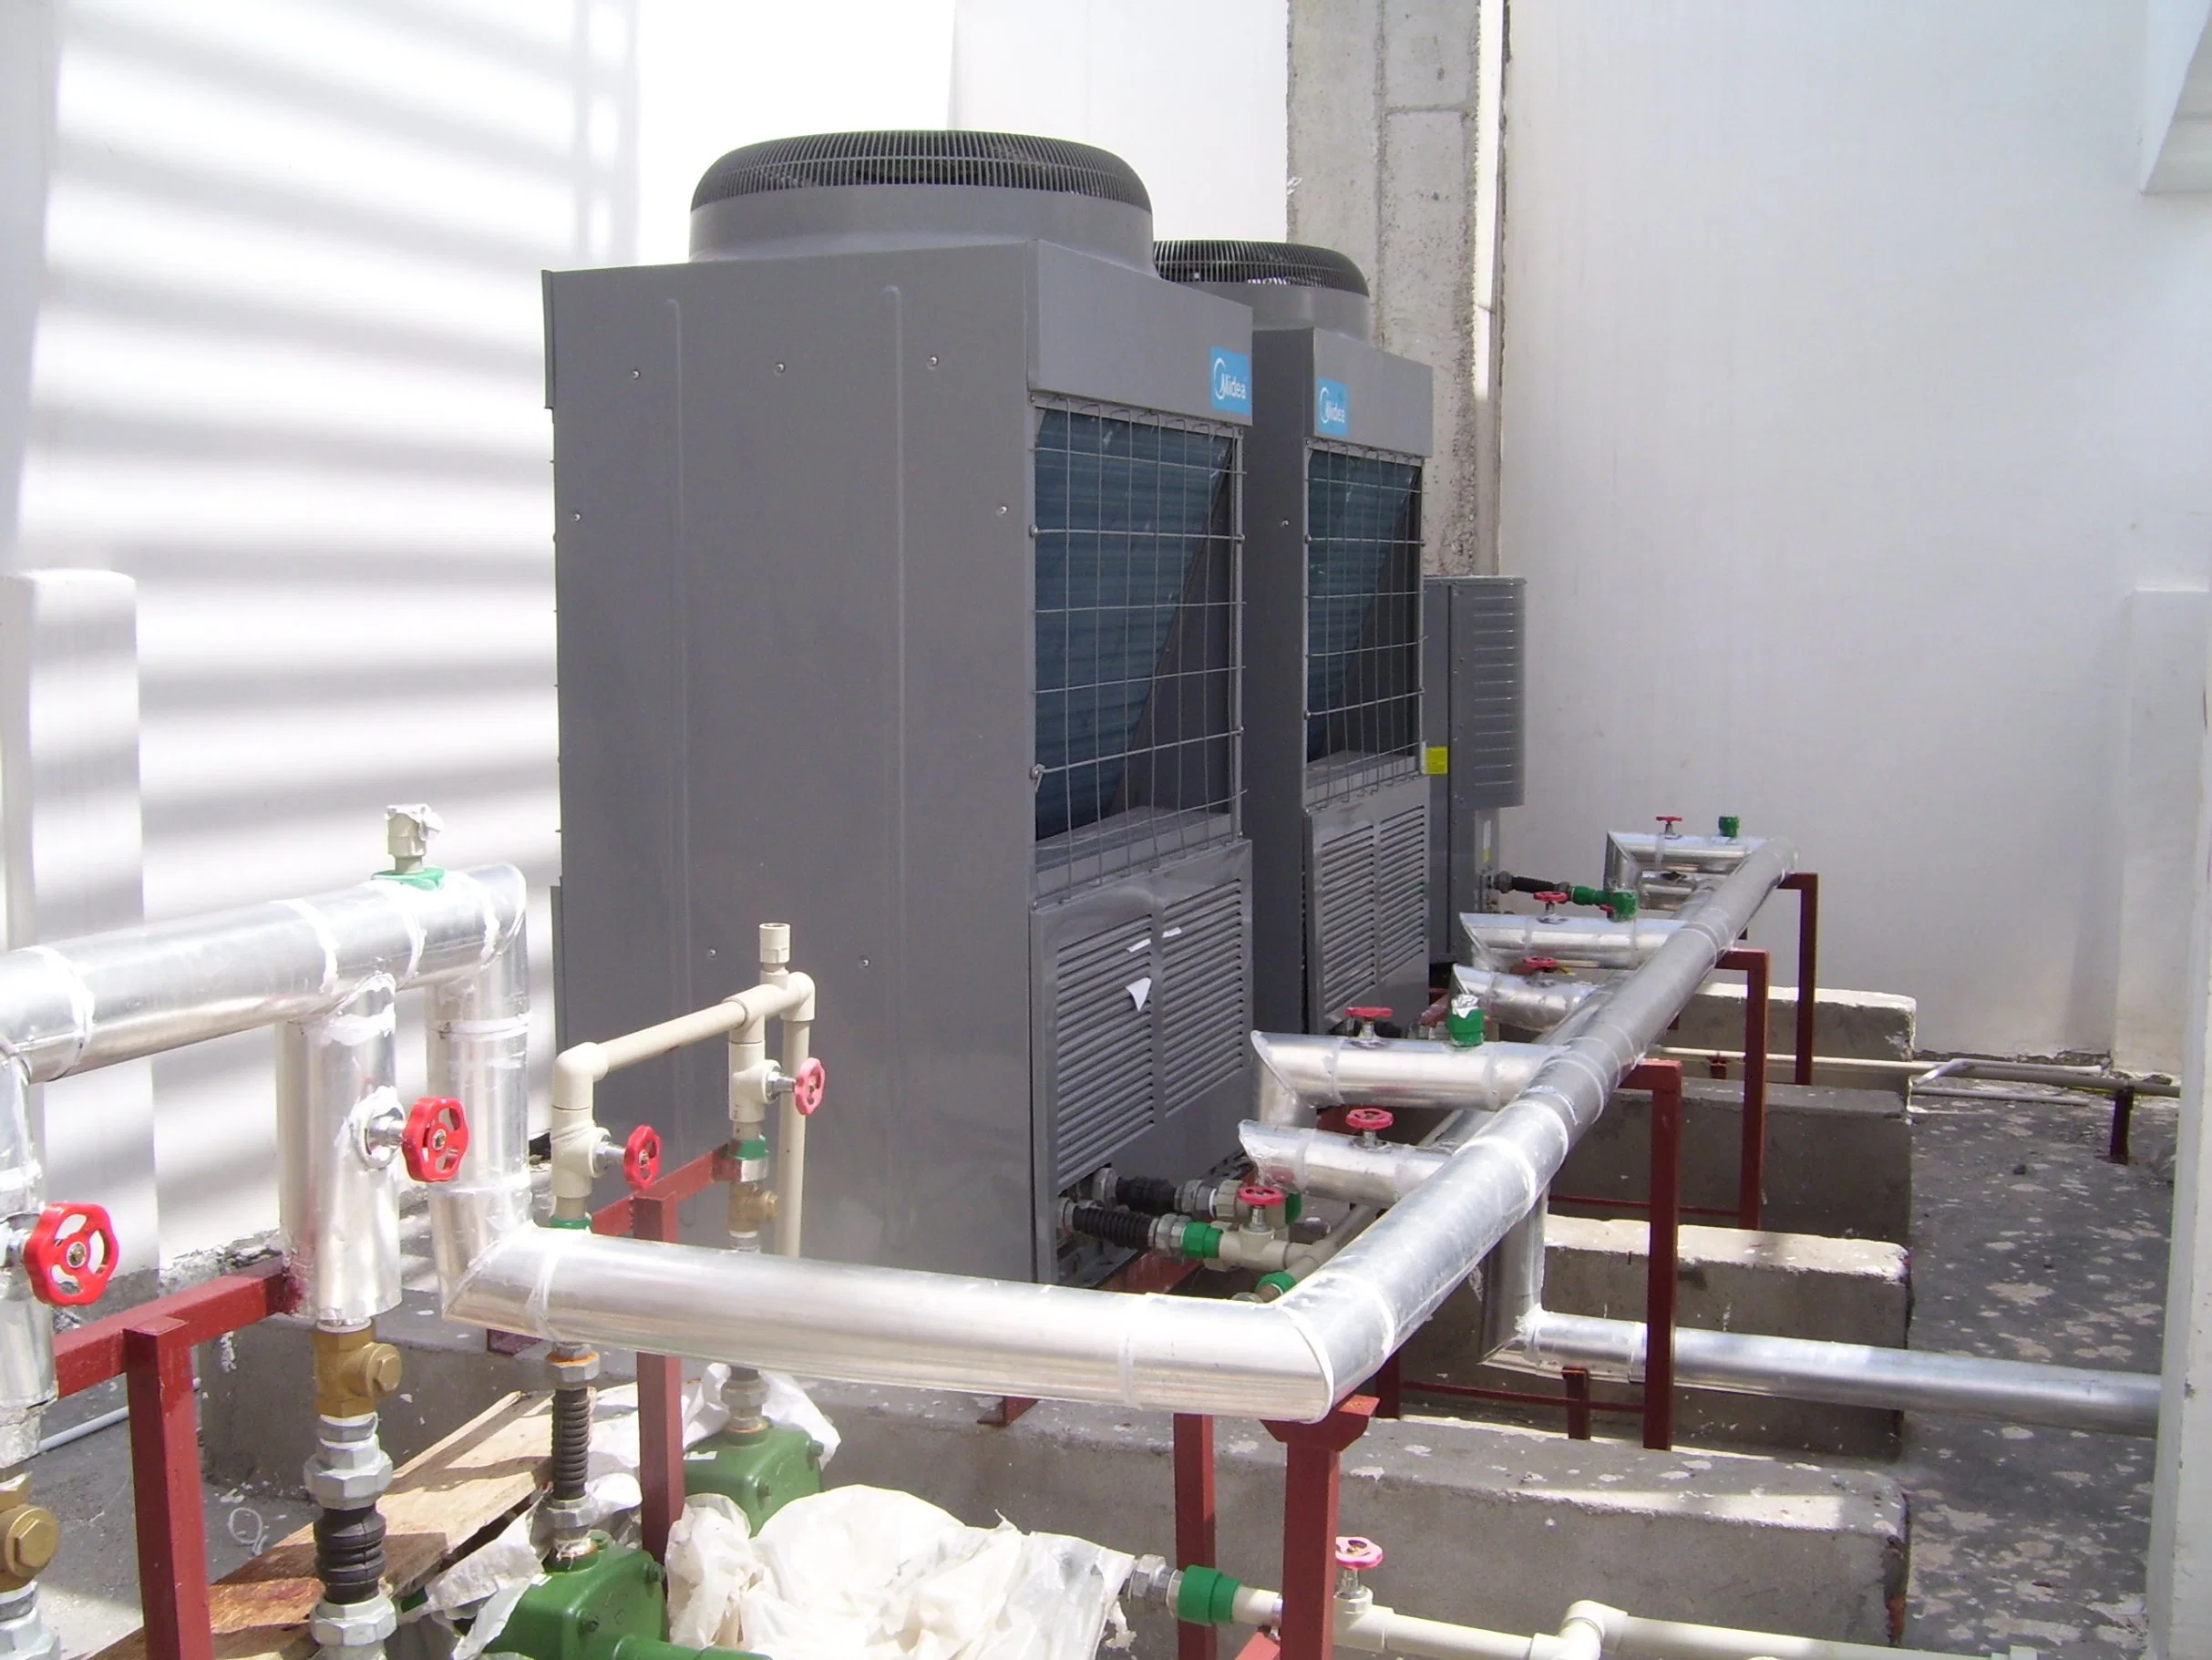 Midea R410A Wired Controller Industrielle Maschinen Luftgekühlter Wasserkühler